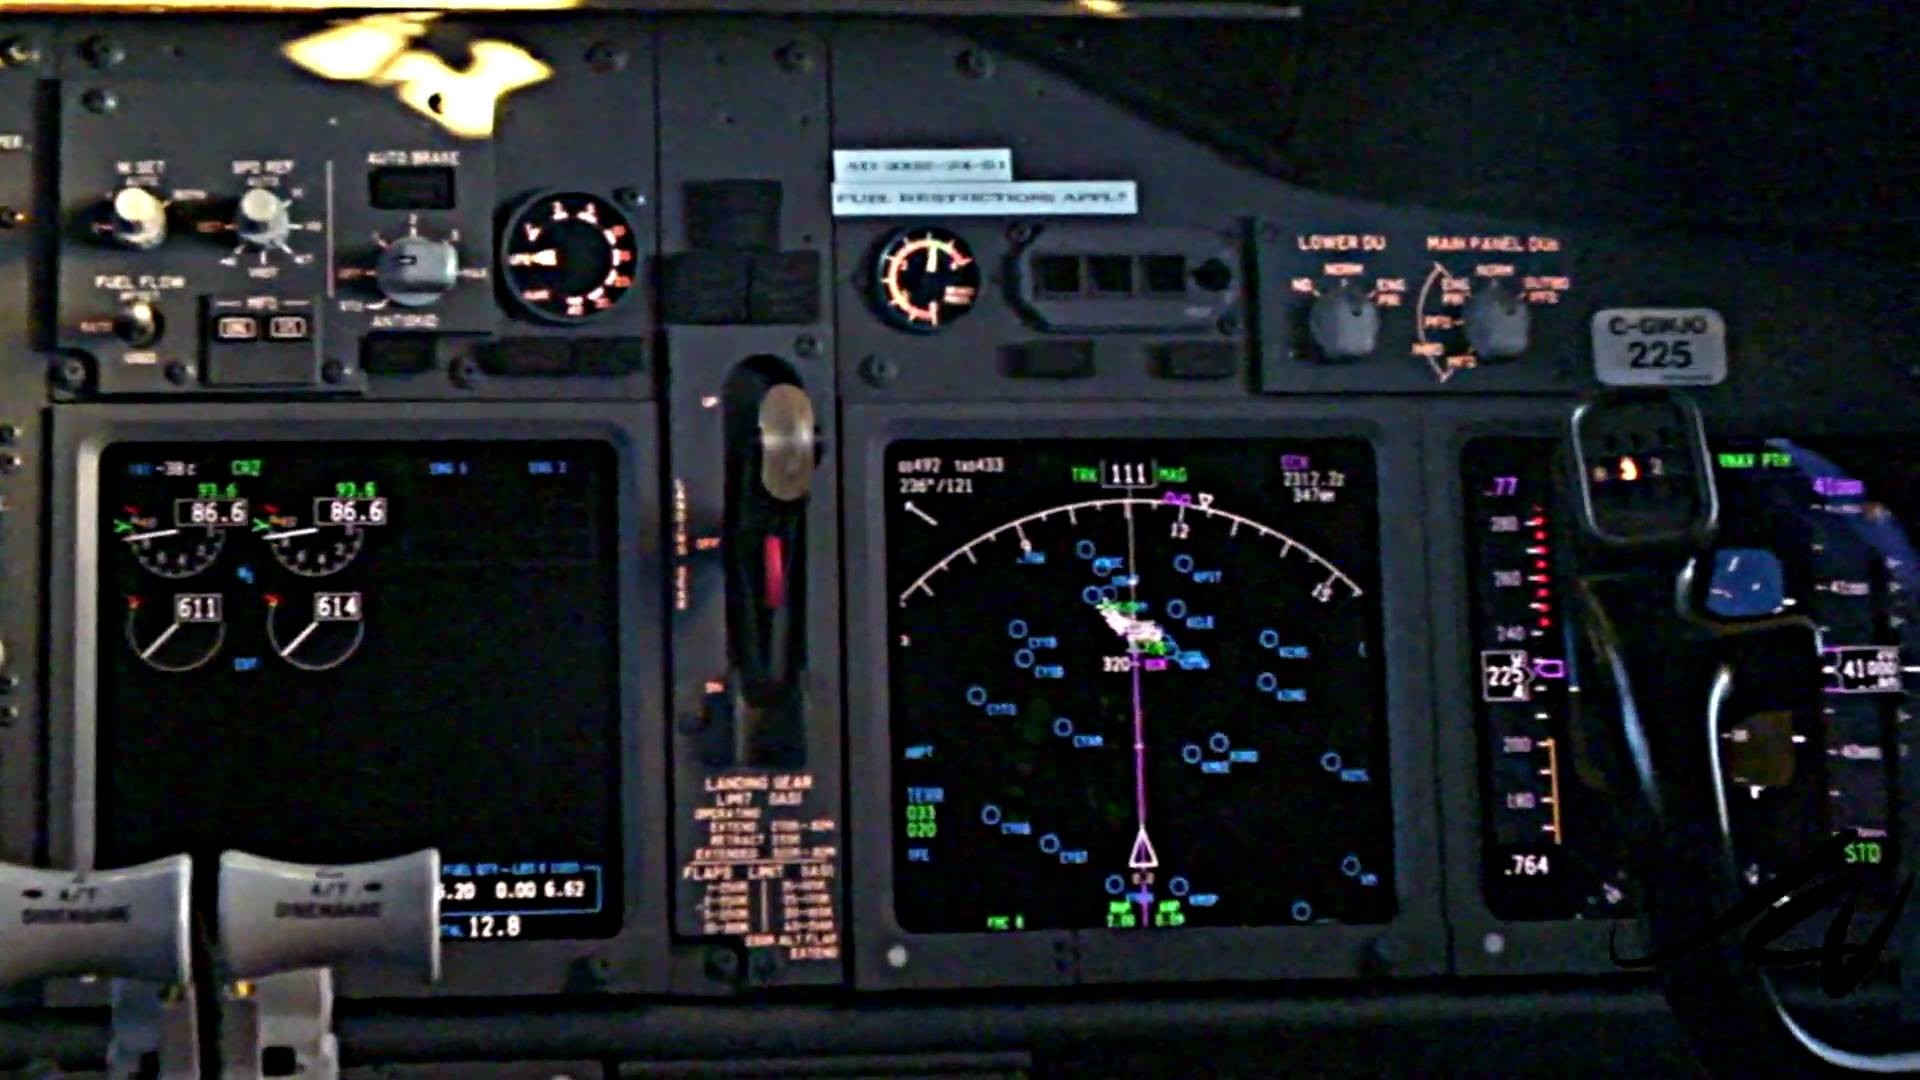 1920x1080 Boeing 737 Cockpit Wallpaper Boeing 737 flight deck